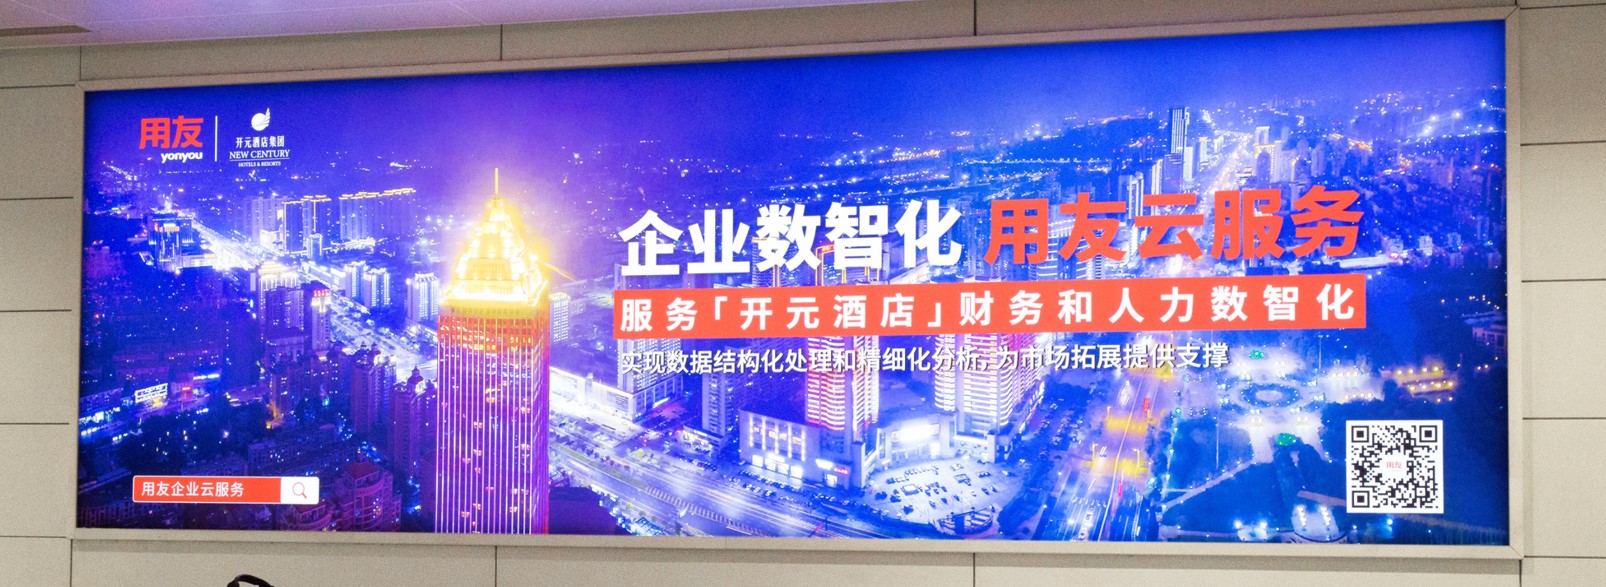 杭州萧山机场广告-T3行李厅墙体灯箱